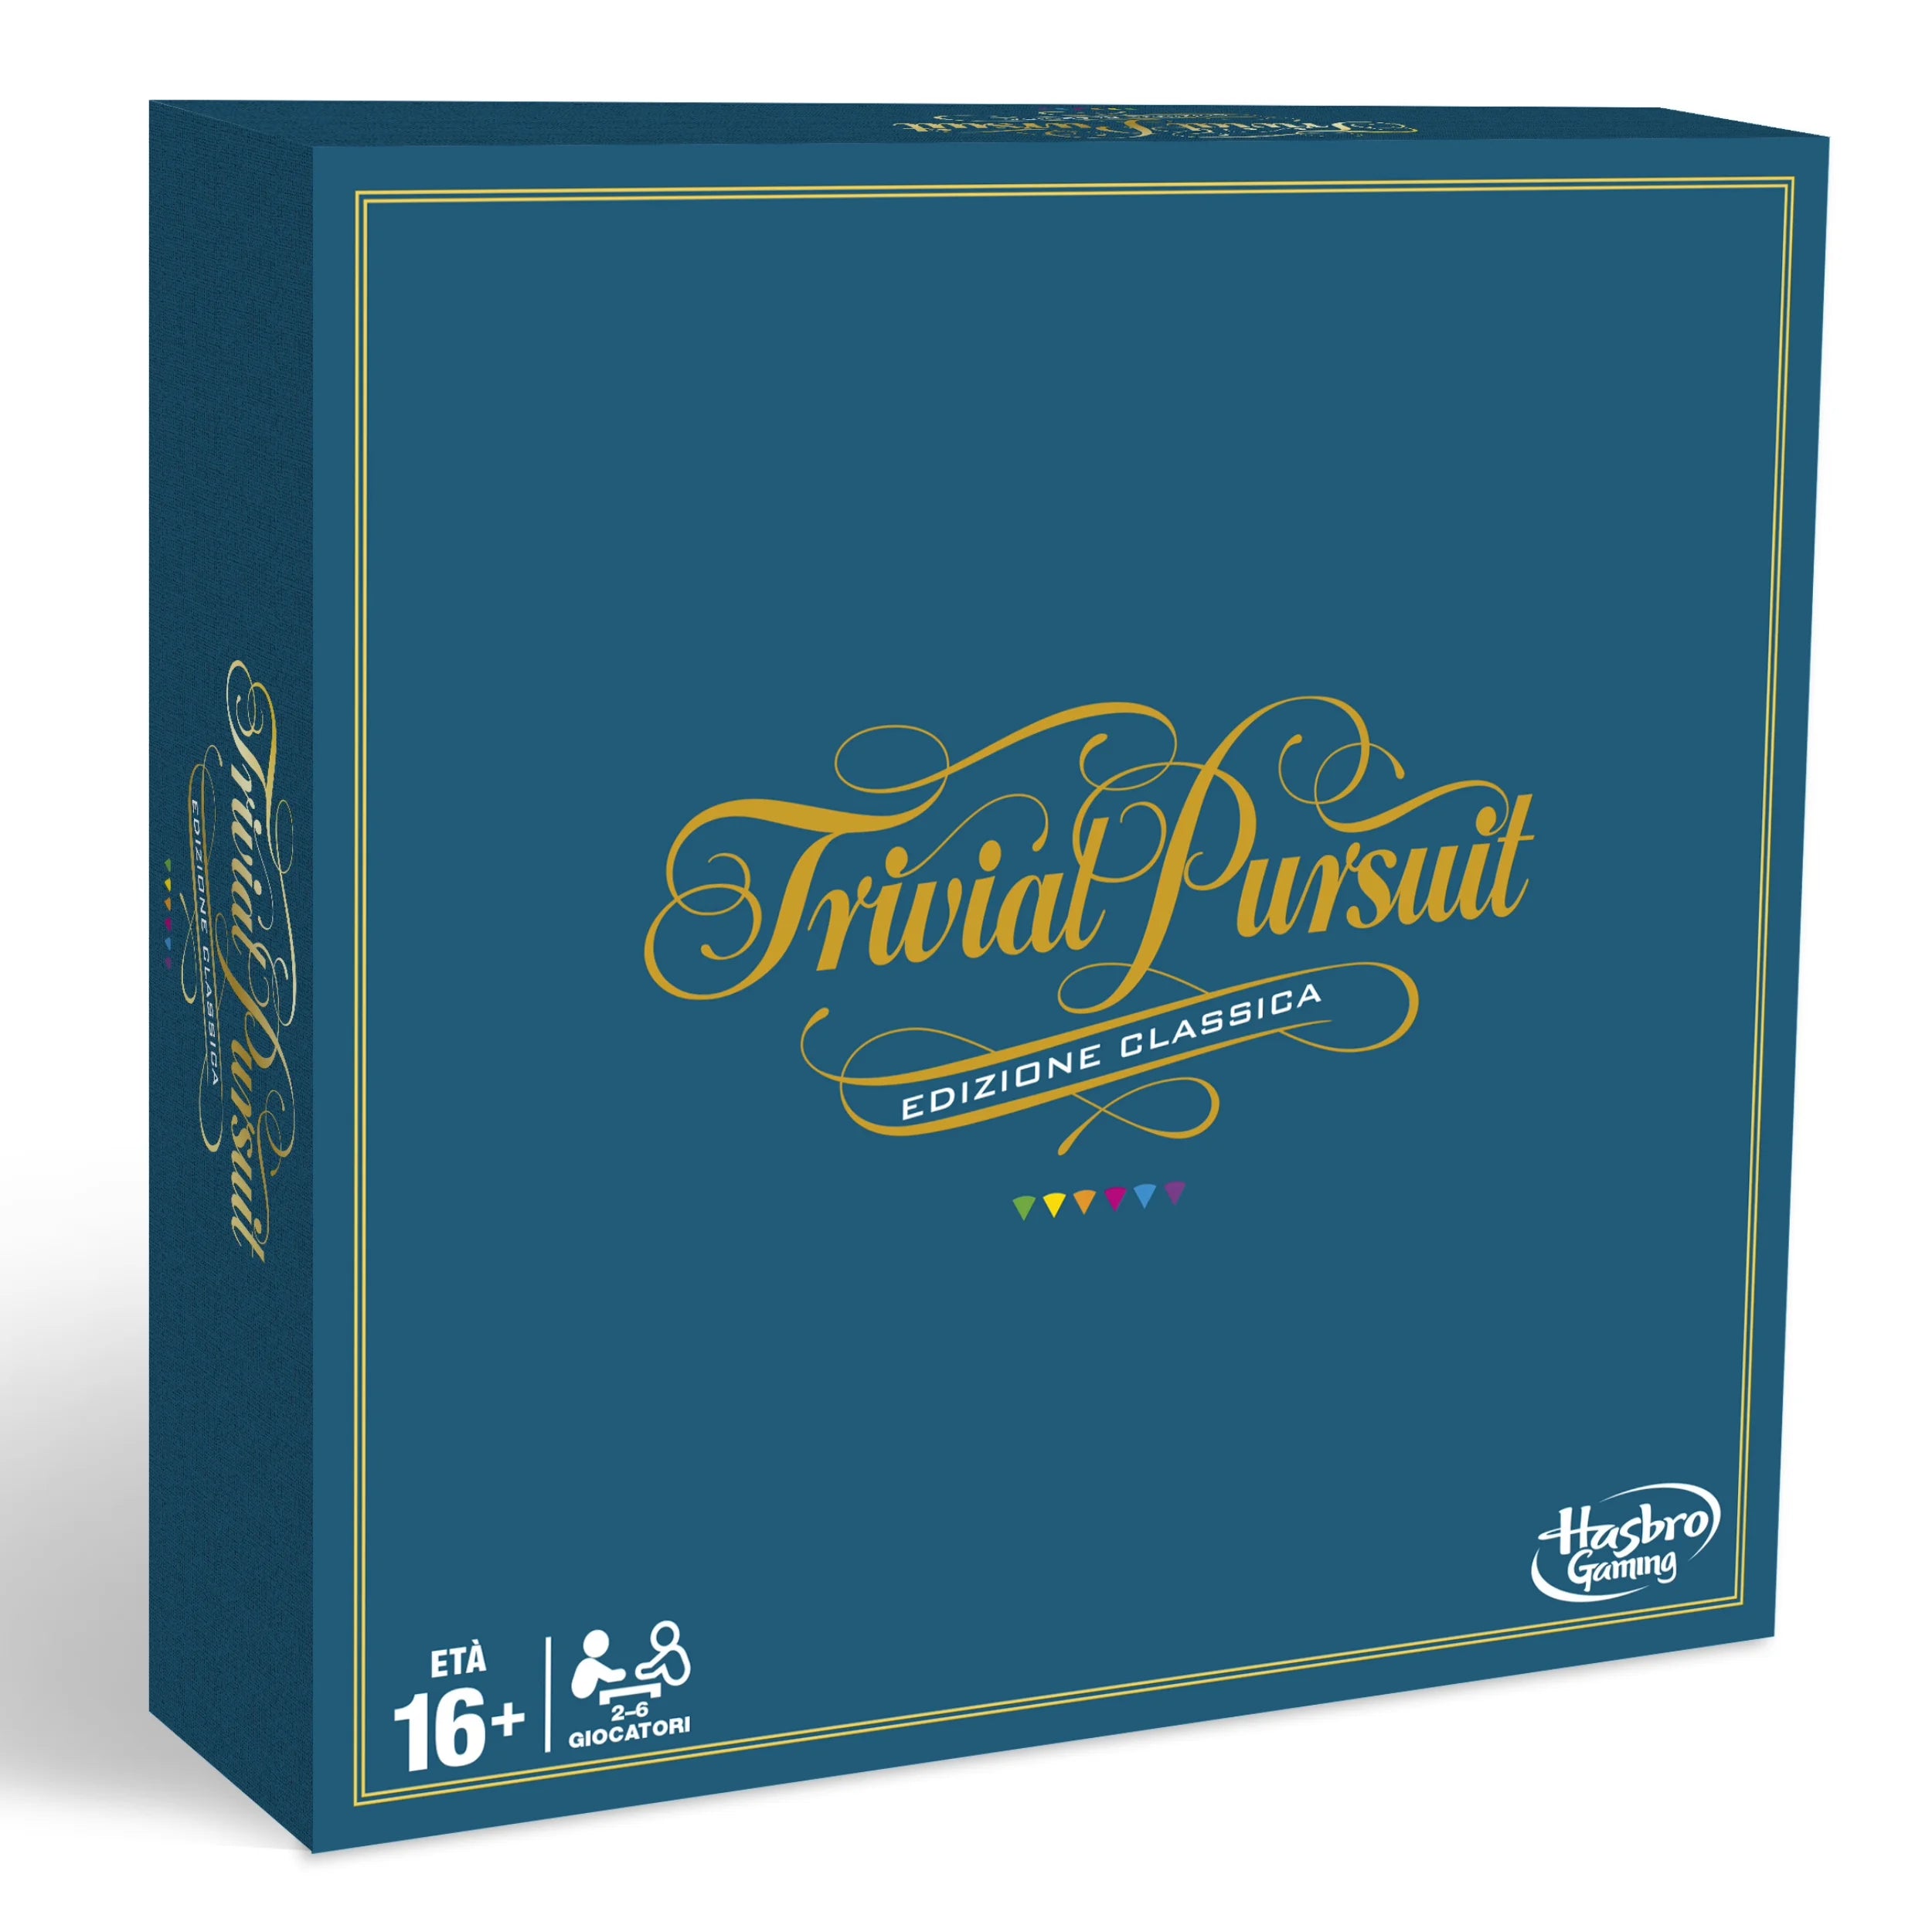 Hasbro - Trivial Pursuit Edizione Classica Board Game - Italian Edition